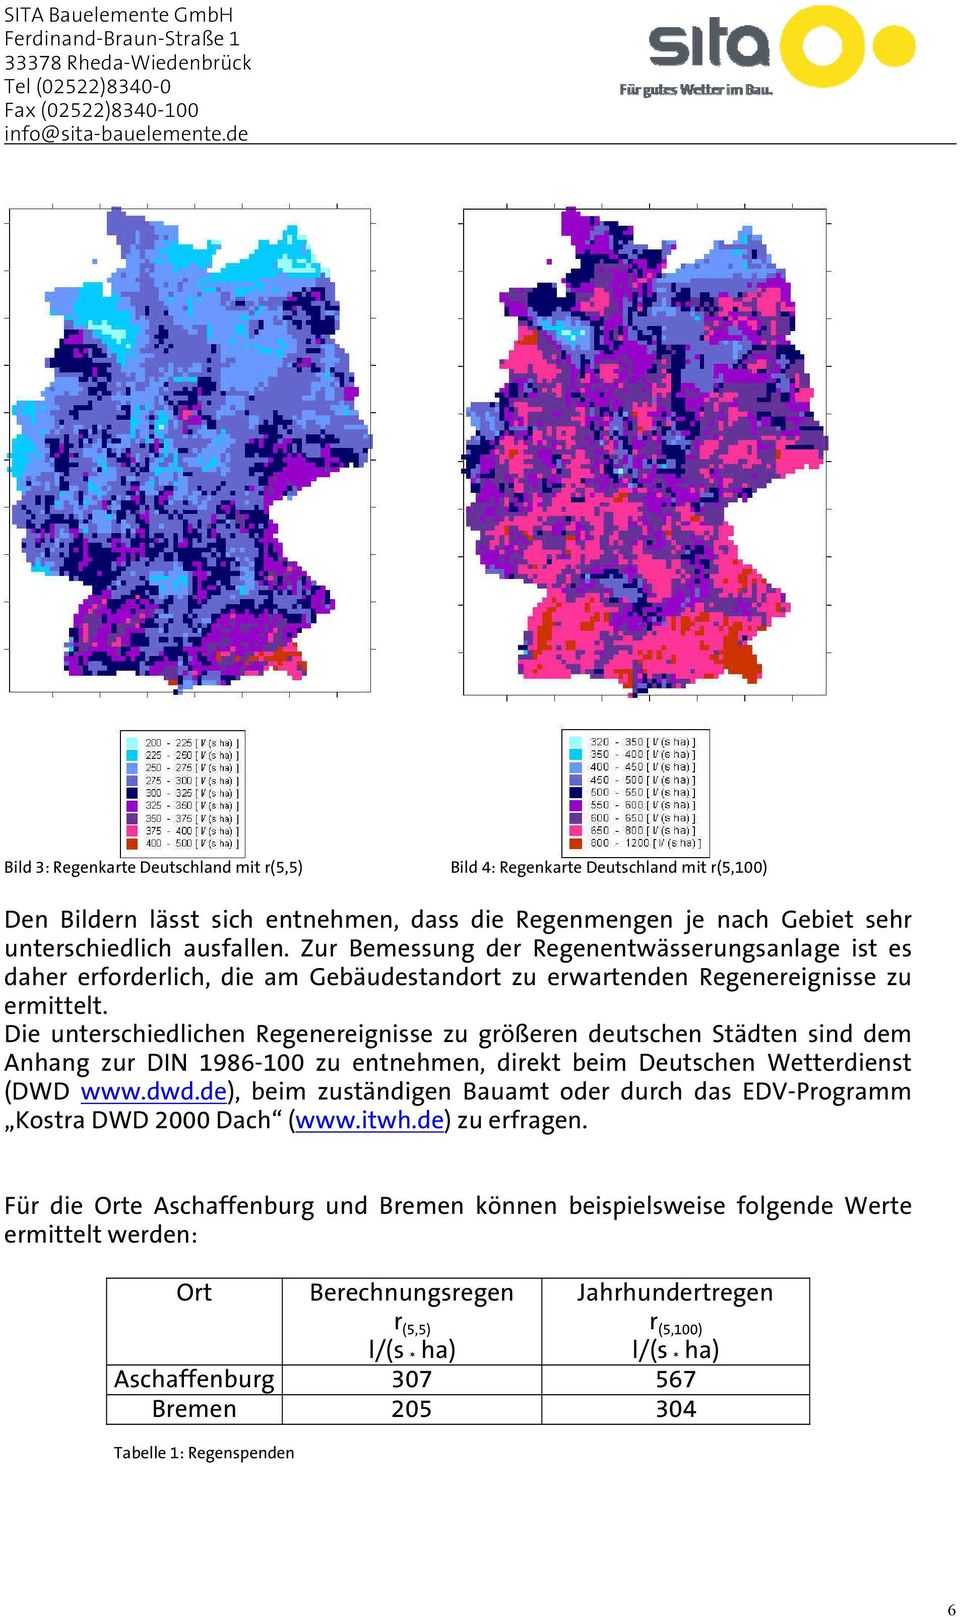 Die unterschiedlichen Regenereignisse zu größeren deutschen Städten sind dem Anhang zur DIN 1986-100 zu entnehmen, direkt beim Deutschen Wetterdienst (DWD www.dwd.